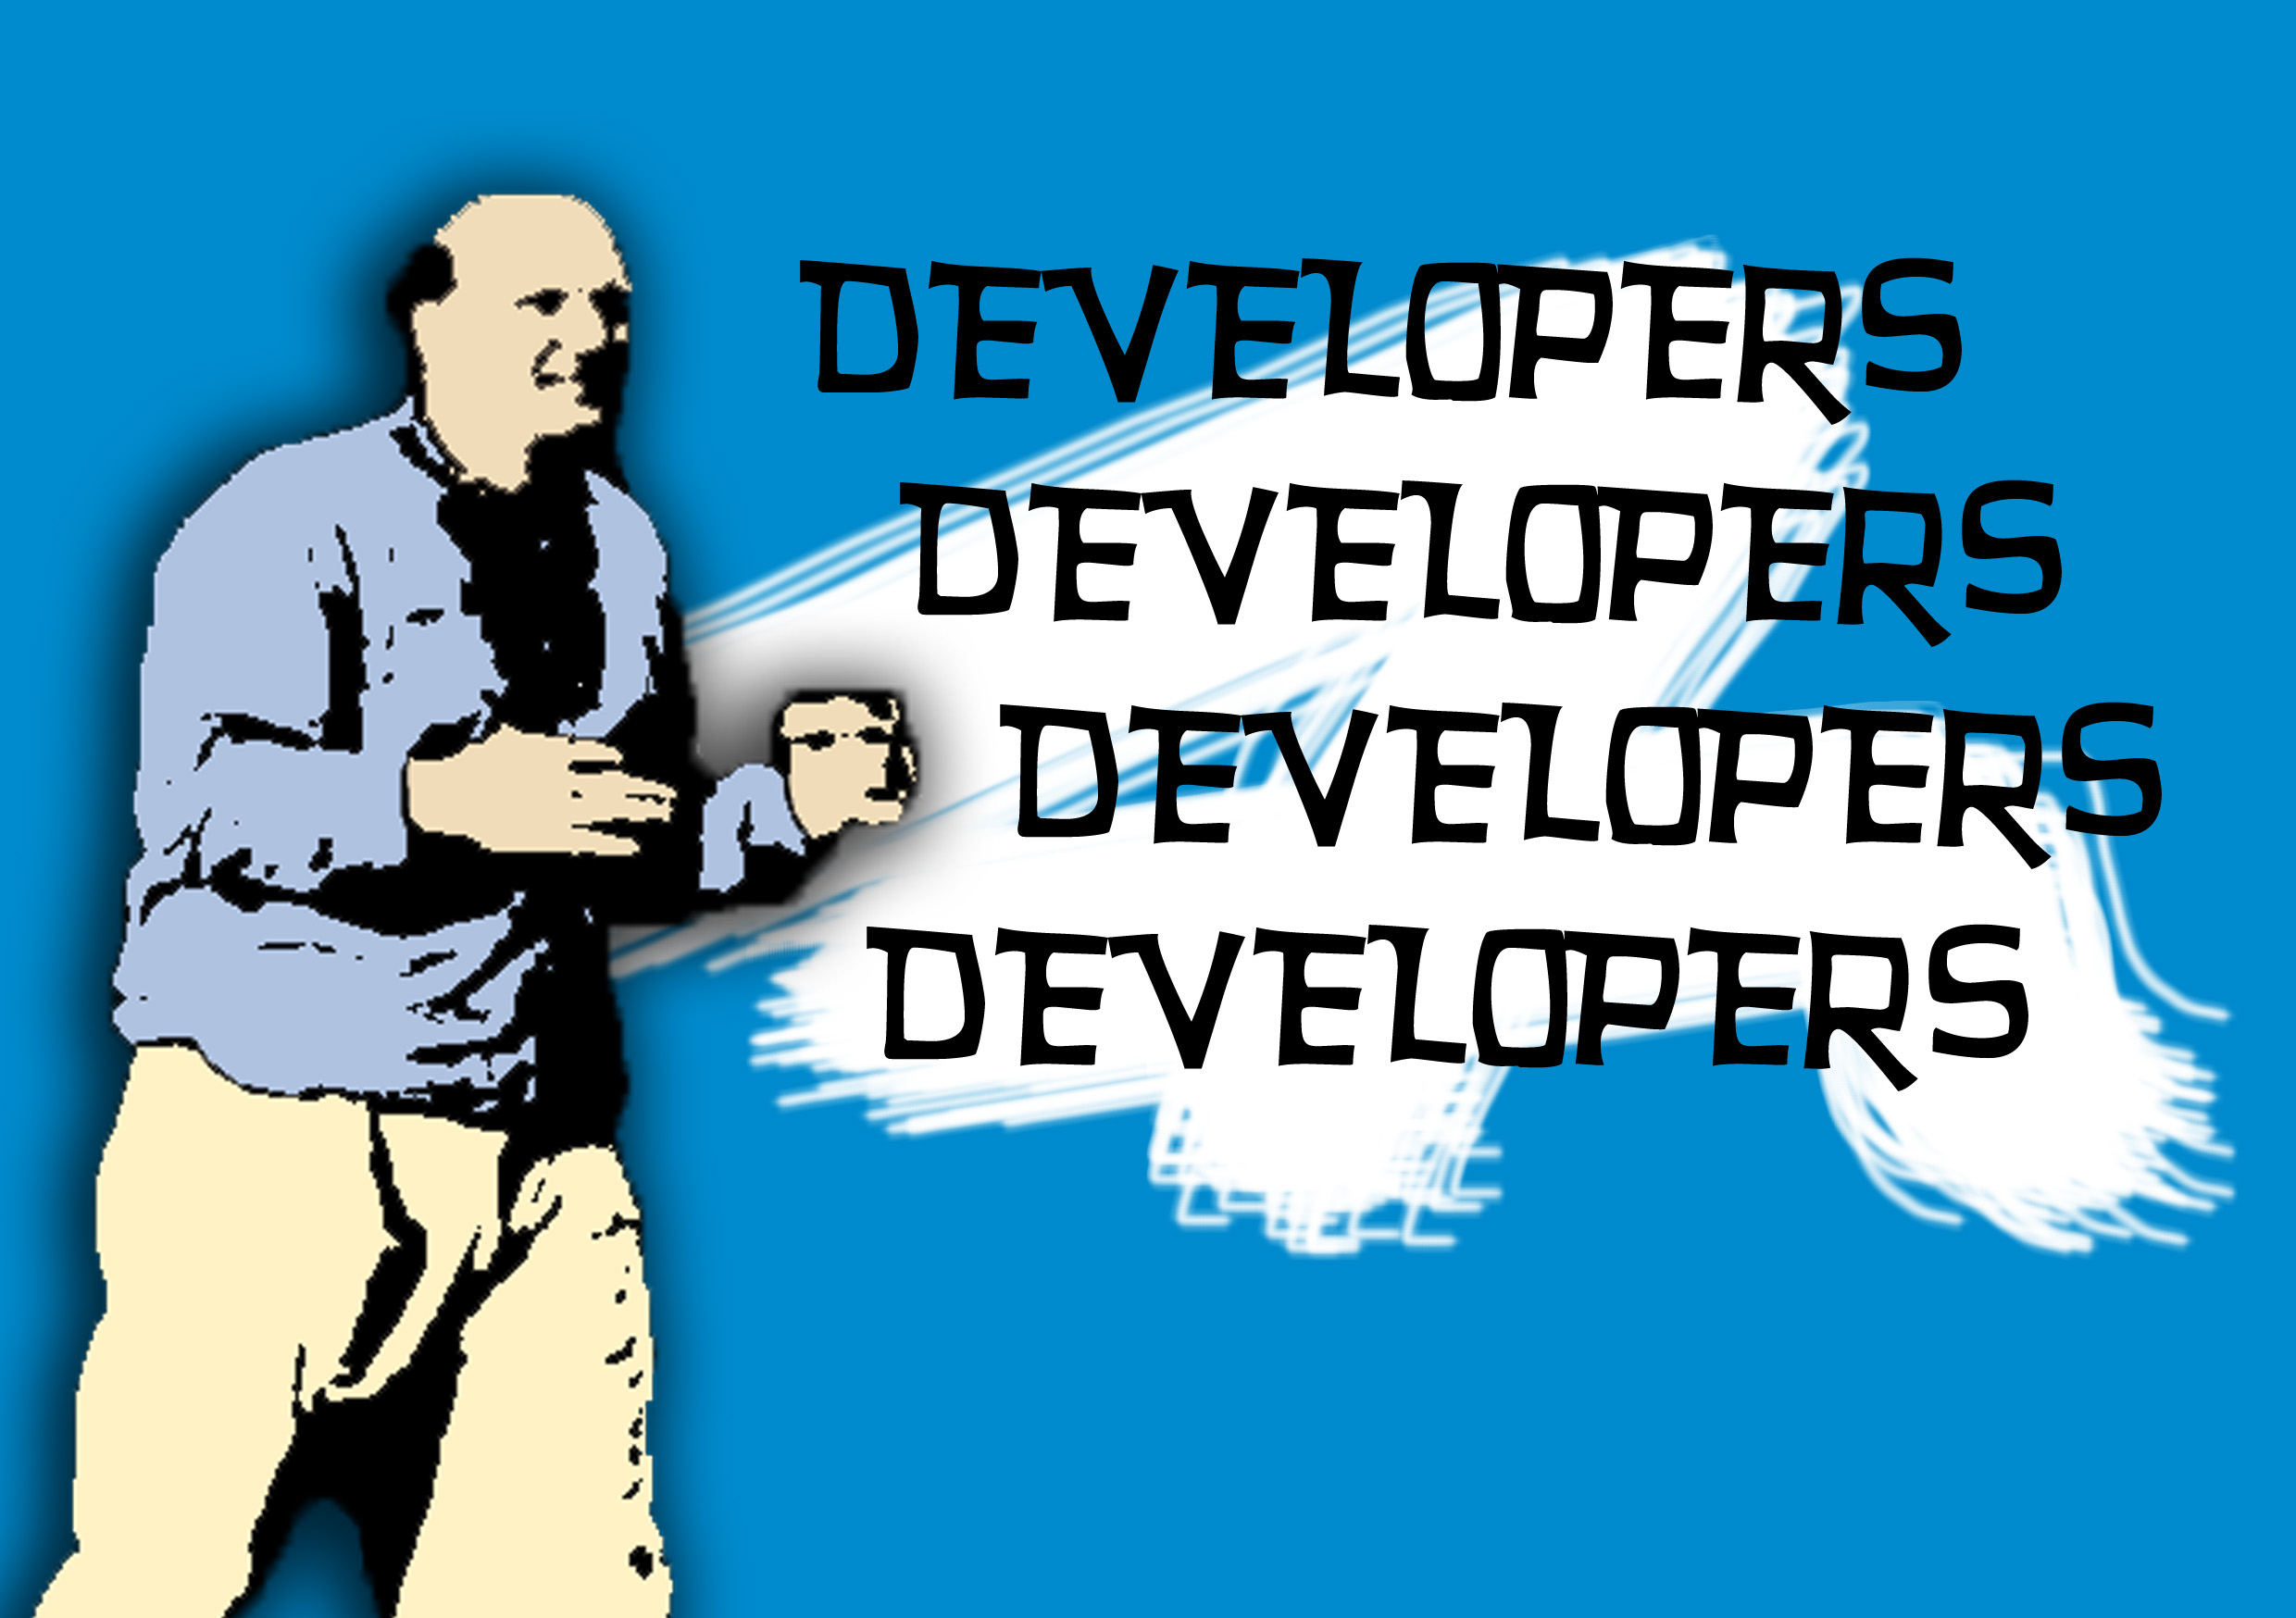 developers, developers, developers